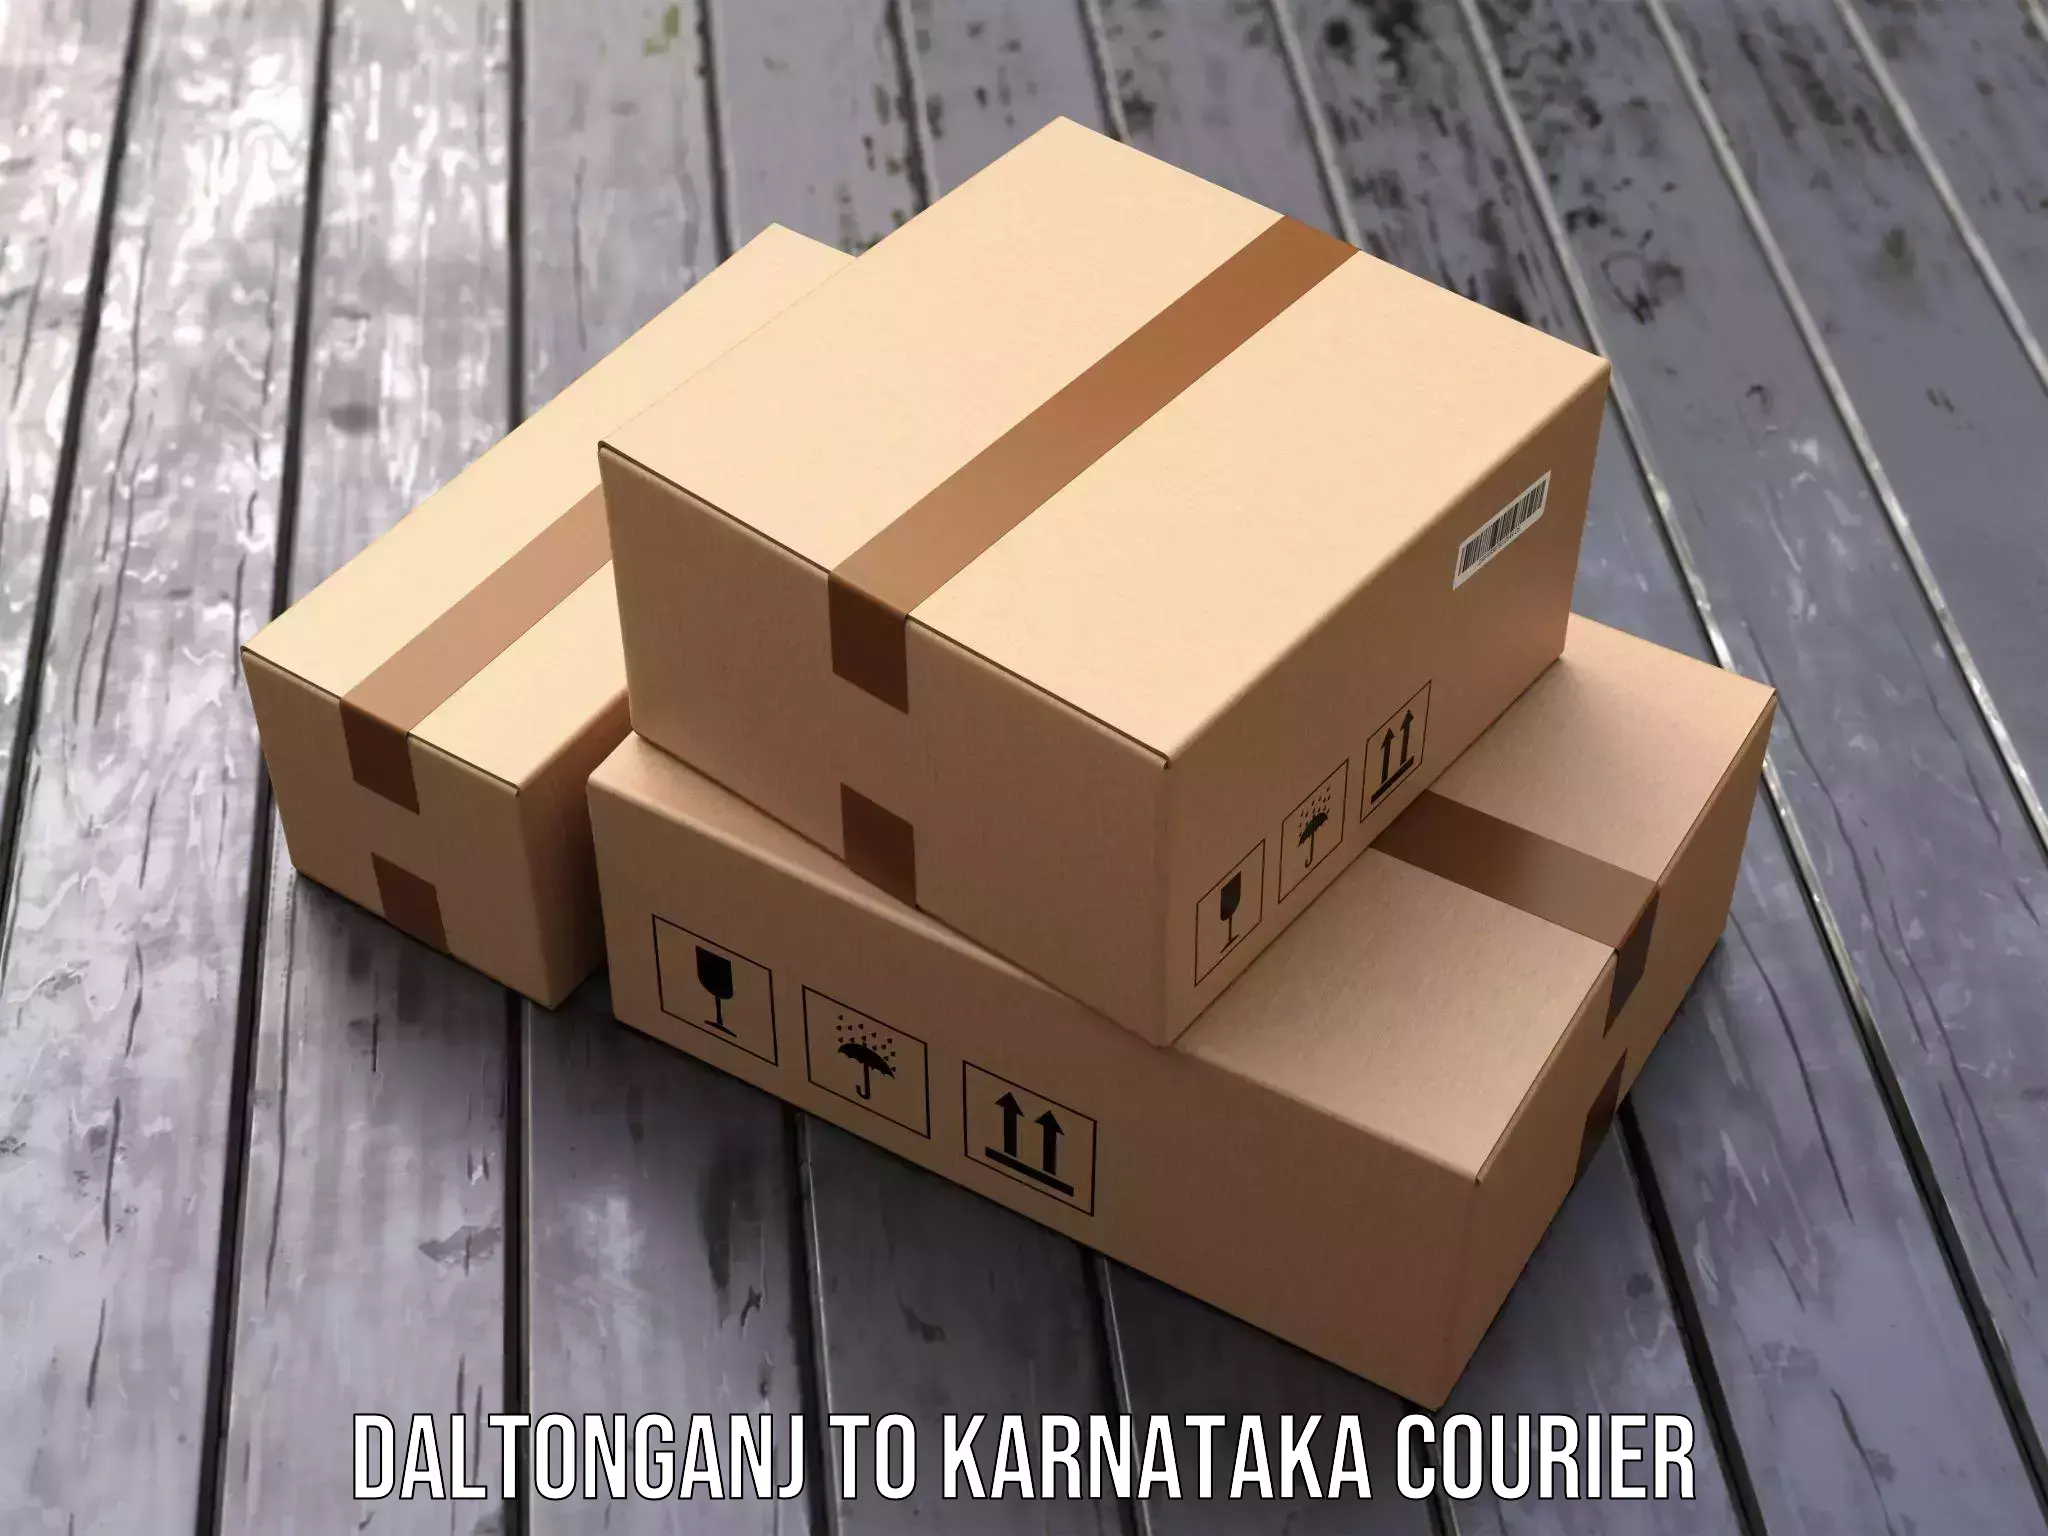 Express logistics providers Daltonganj to Kulshekar